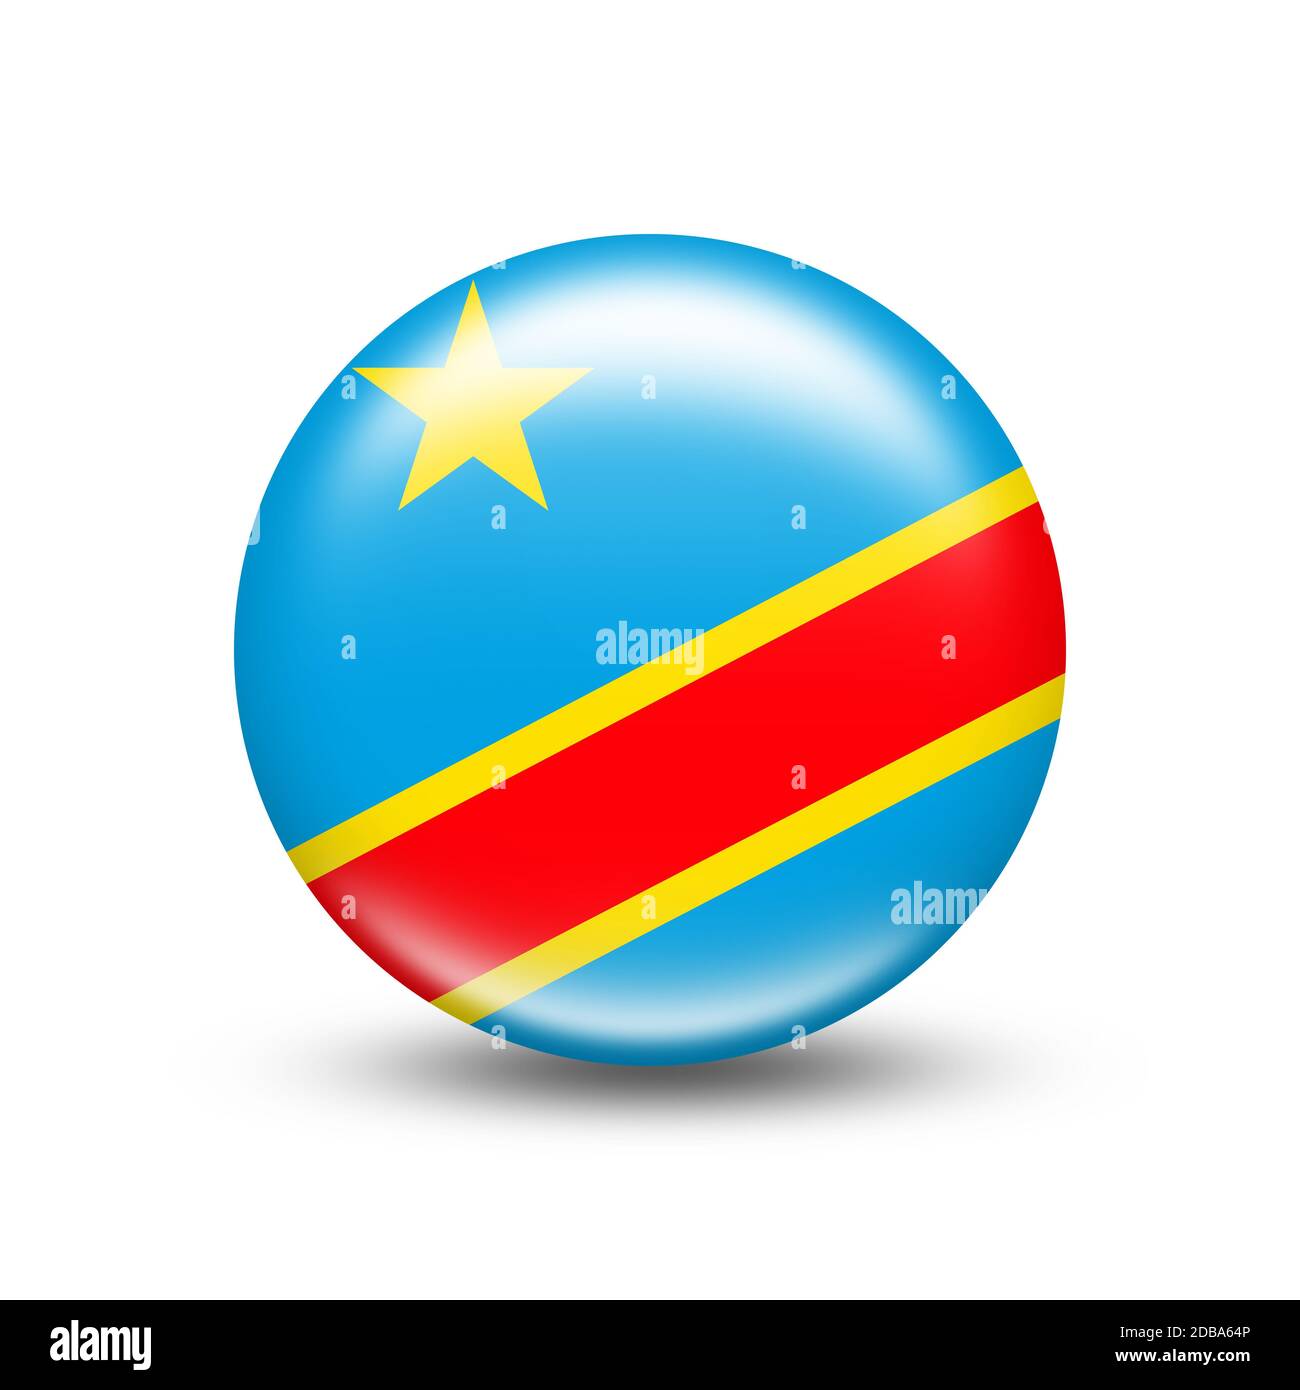 Flagge des Landes Demokratische Republik Kongo in Eine Kugel mit weißem Schatten - Illustration Stockfoto